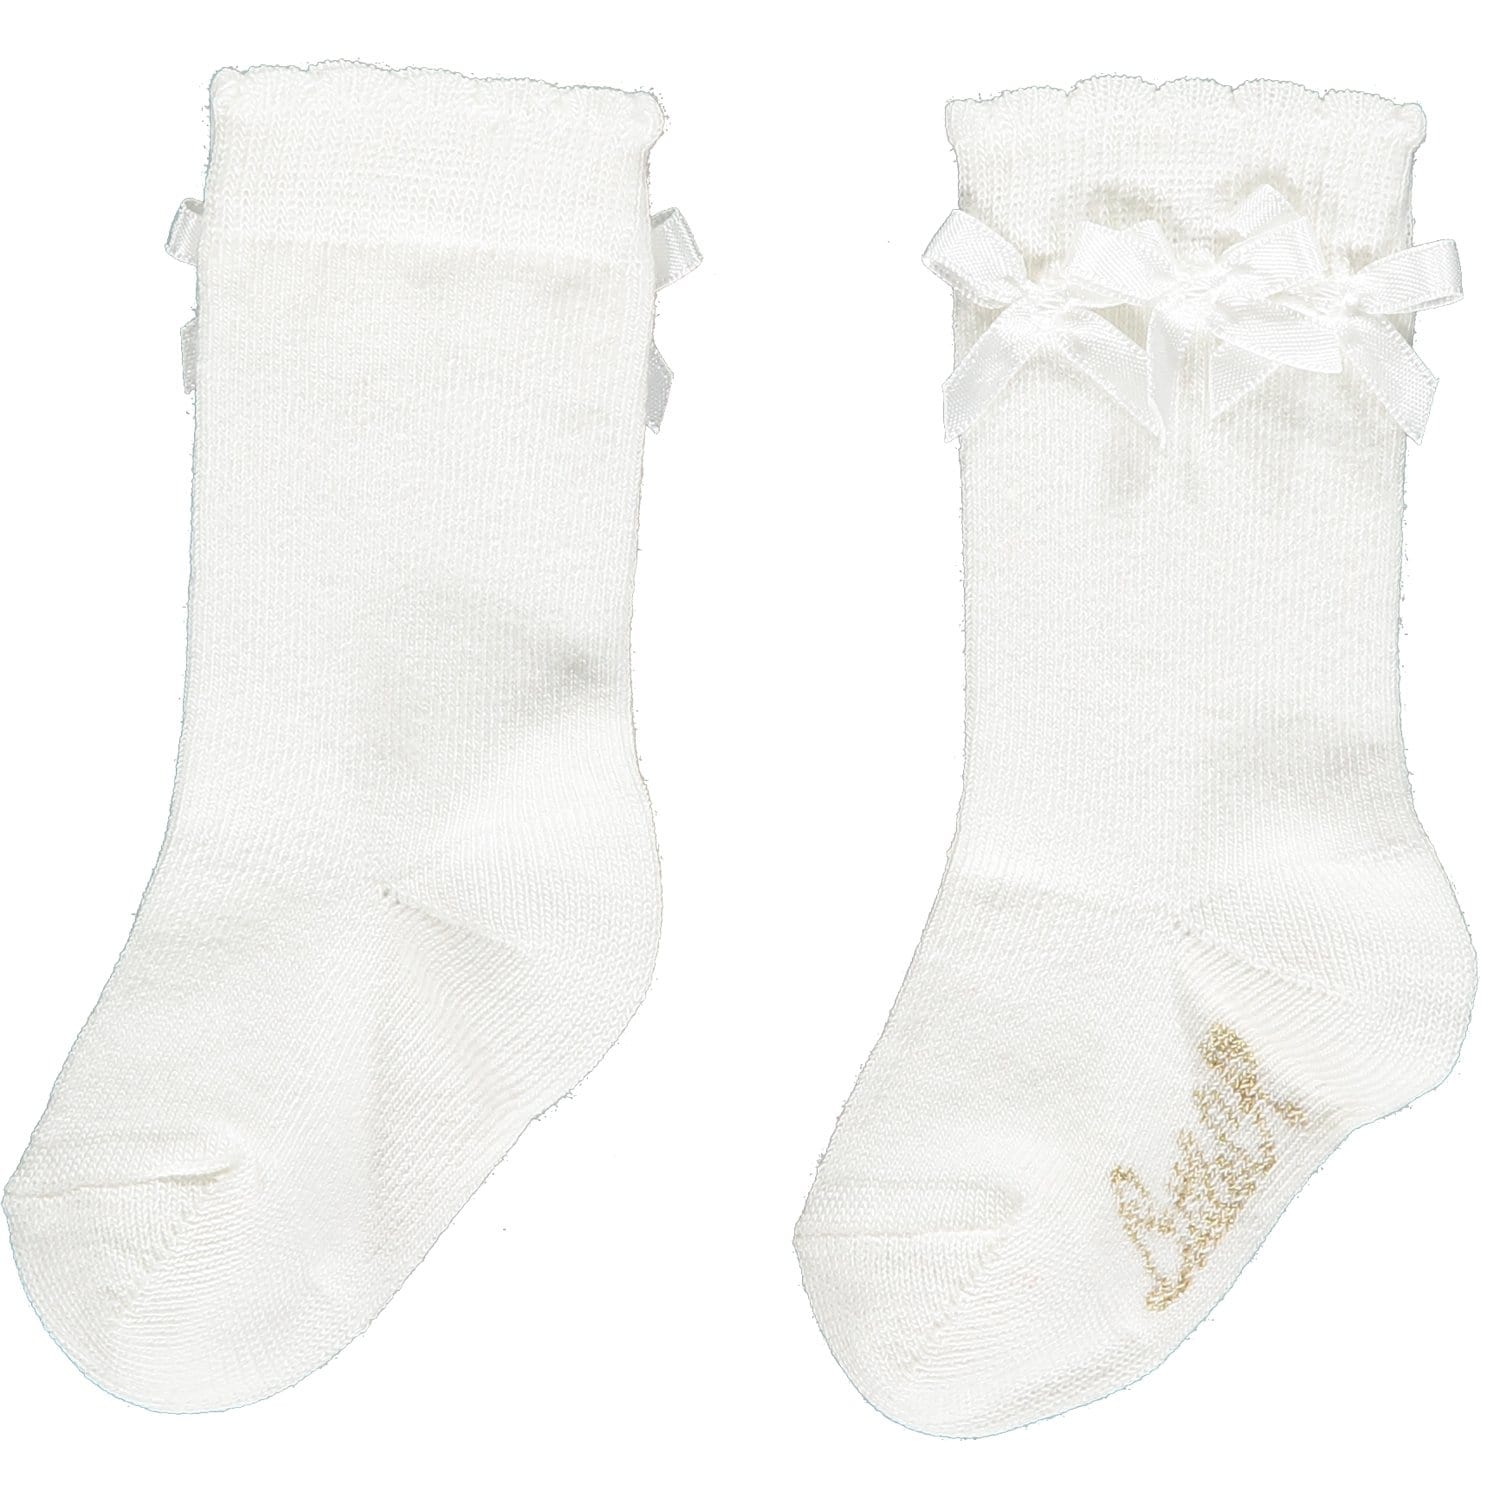 LITTLE A - Frill Knee High Socks - White